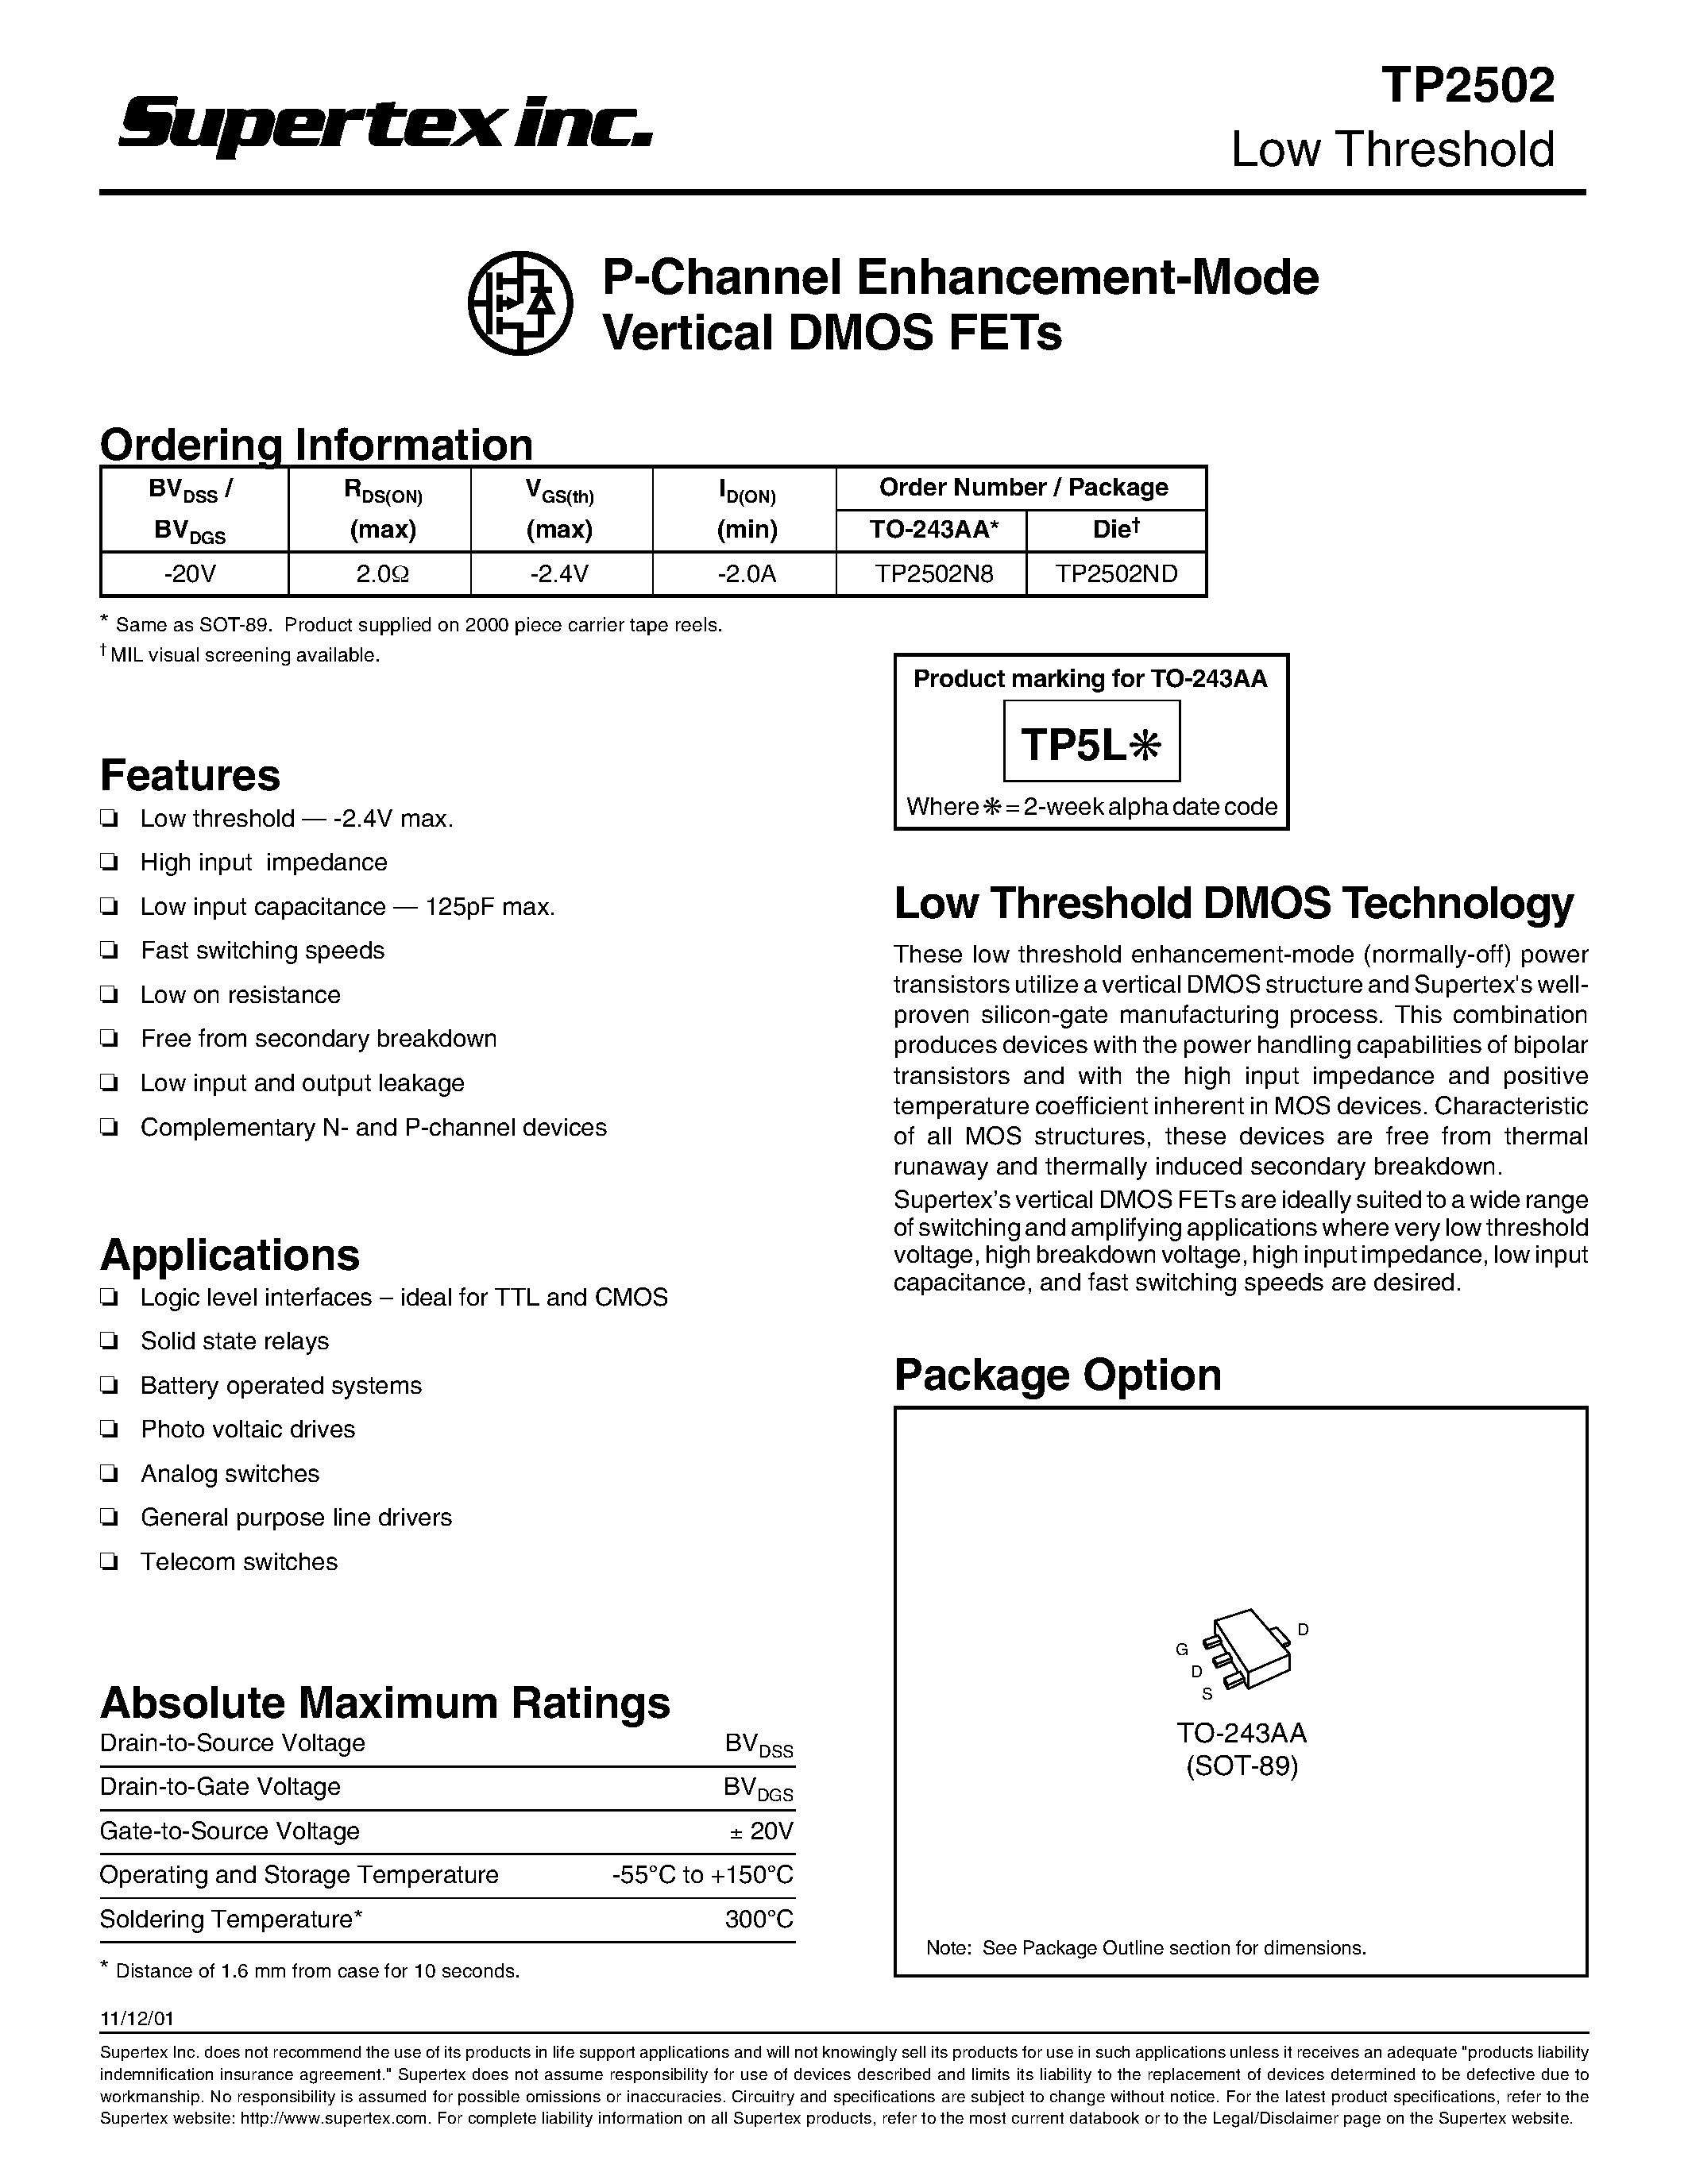 Даташит TP2502 - P-Channel Enhancement-Mode Vertical DMOS FETs страница 1